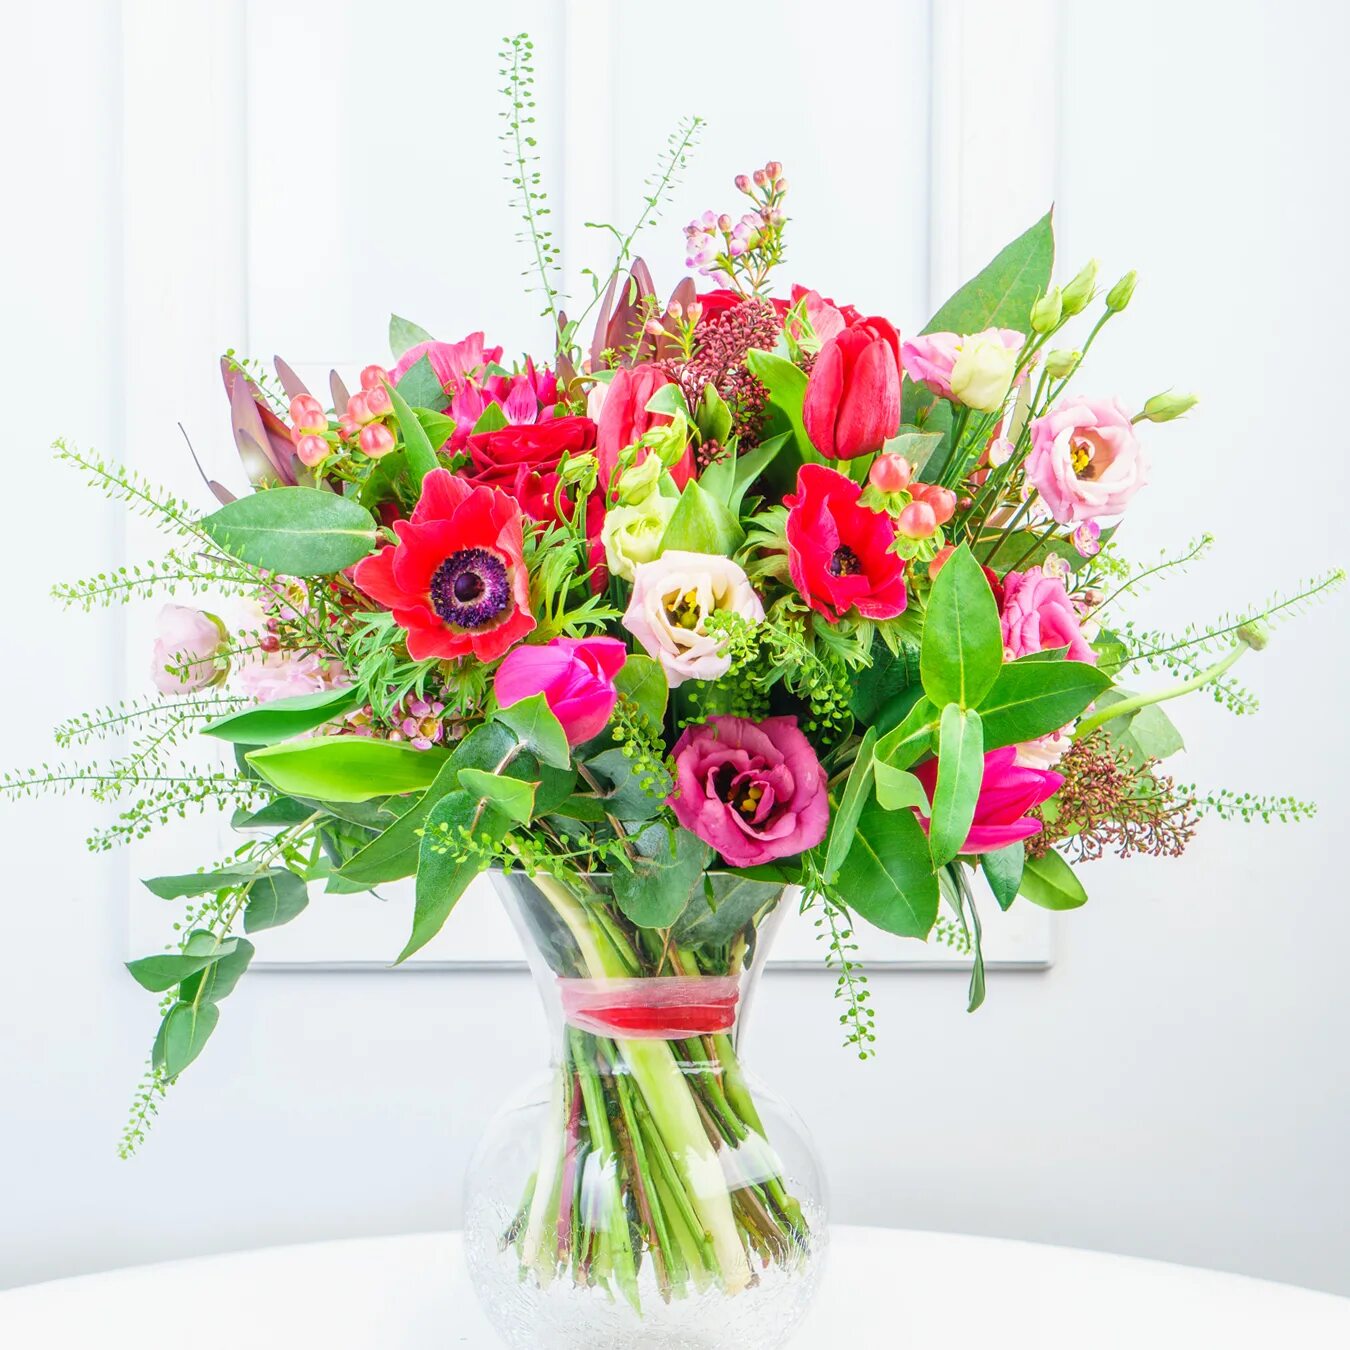 Gpo flowers. Смешанный букет с днем рождения. Букеты завернутые в флористика. Ziedi. Эстония цветы.